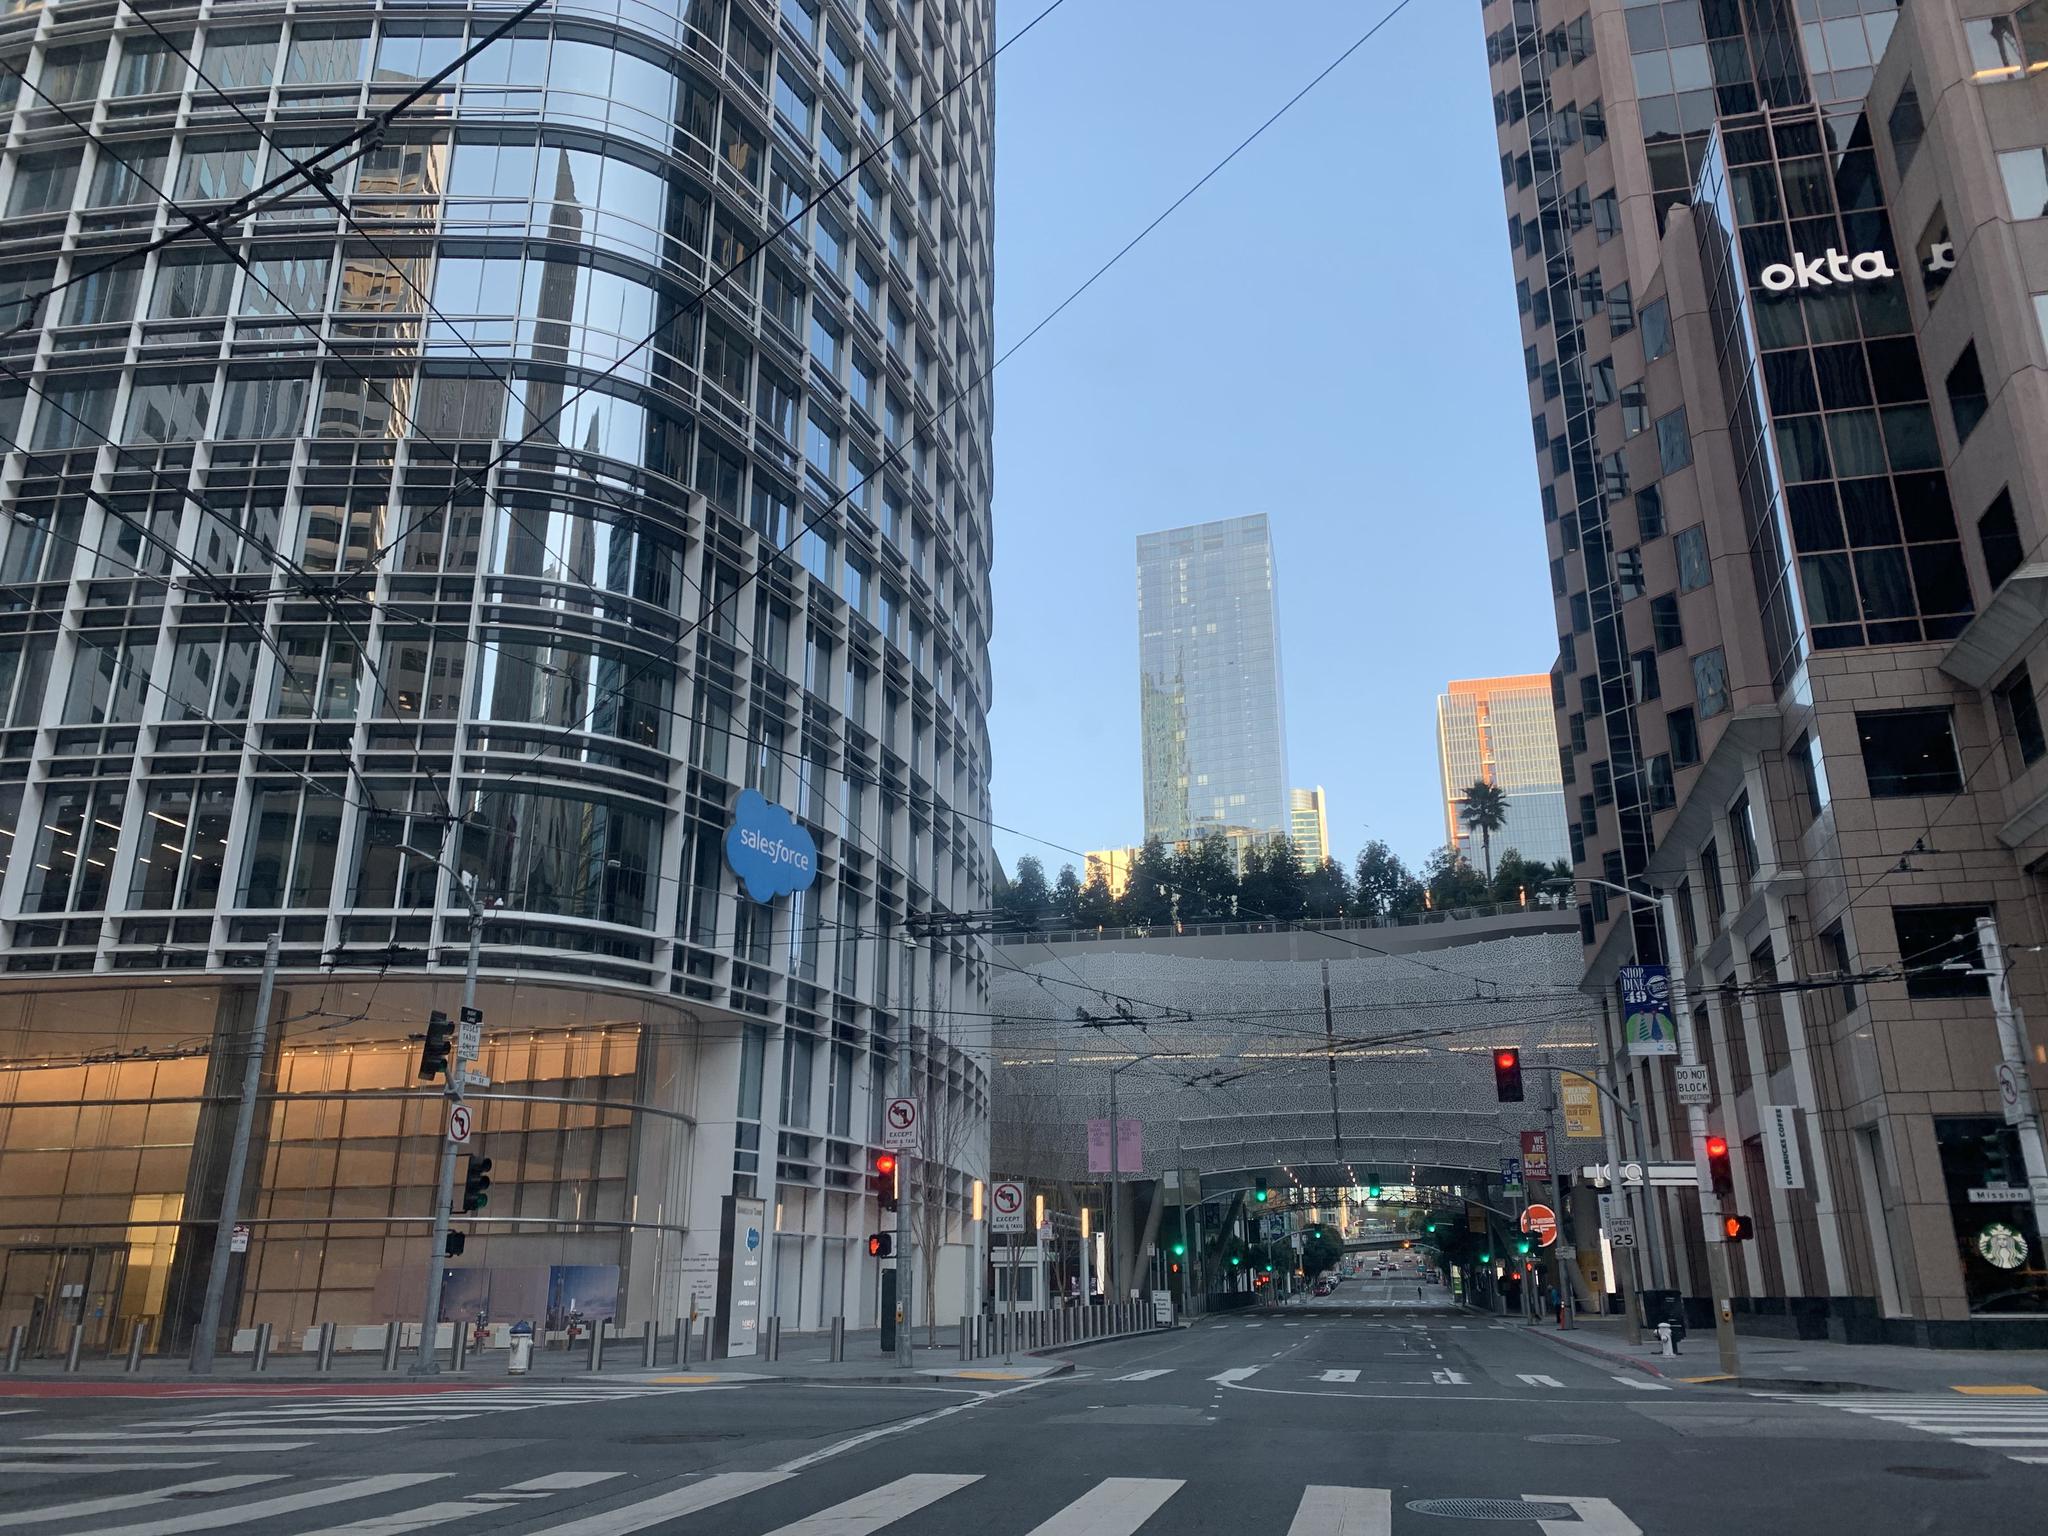 旧金山最高建筑salesforce tower门口街道空旷。